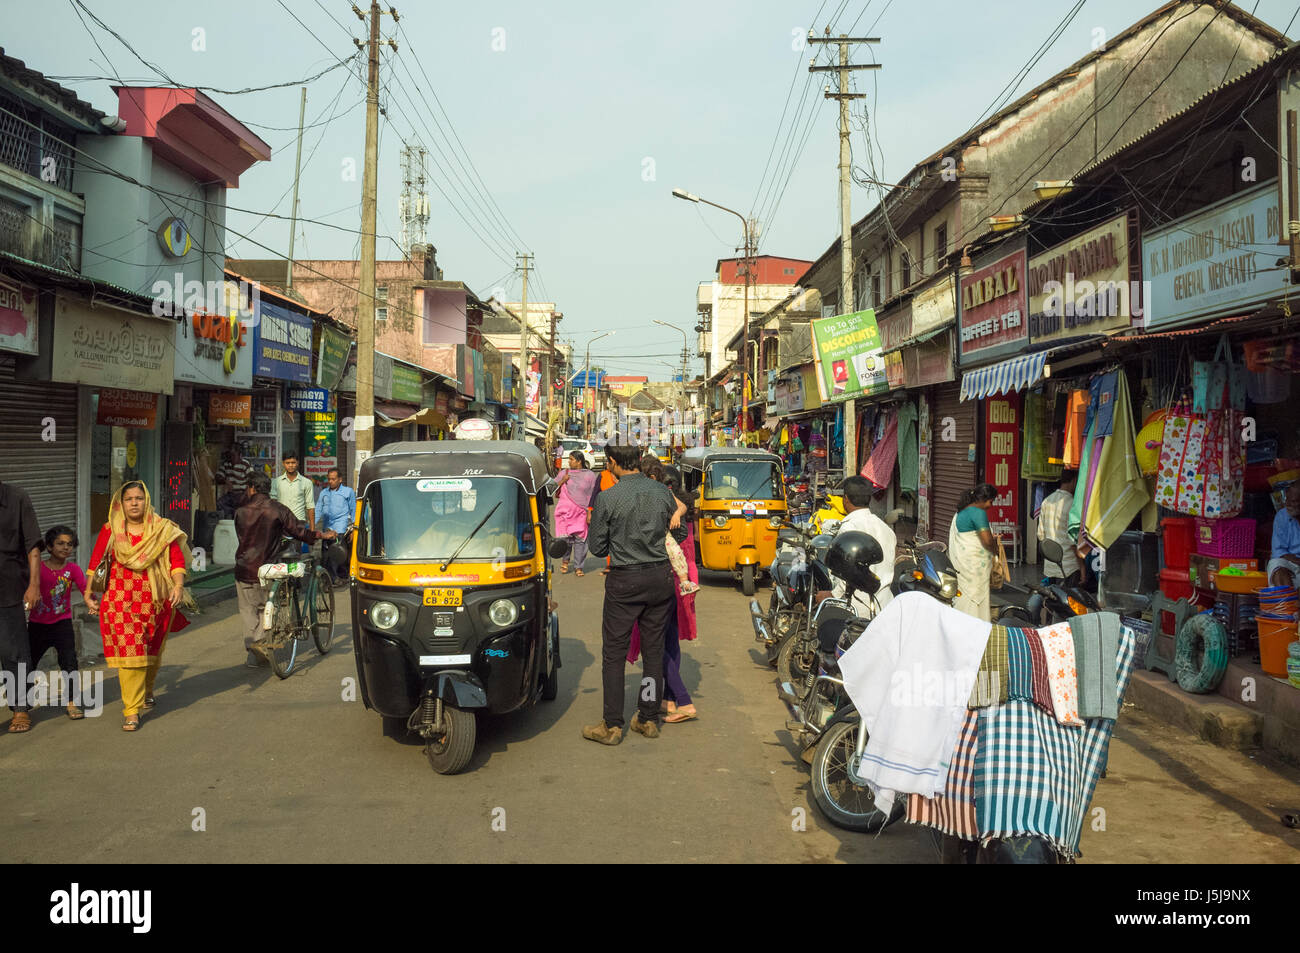 Market street, Trivandrum (Thiruvananthapuram). Kerala, India Stock Photo